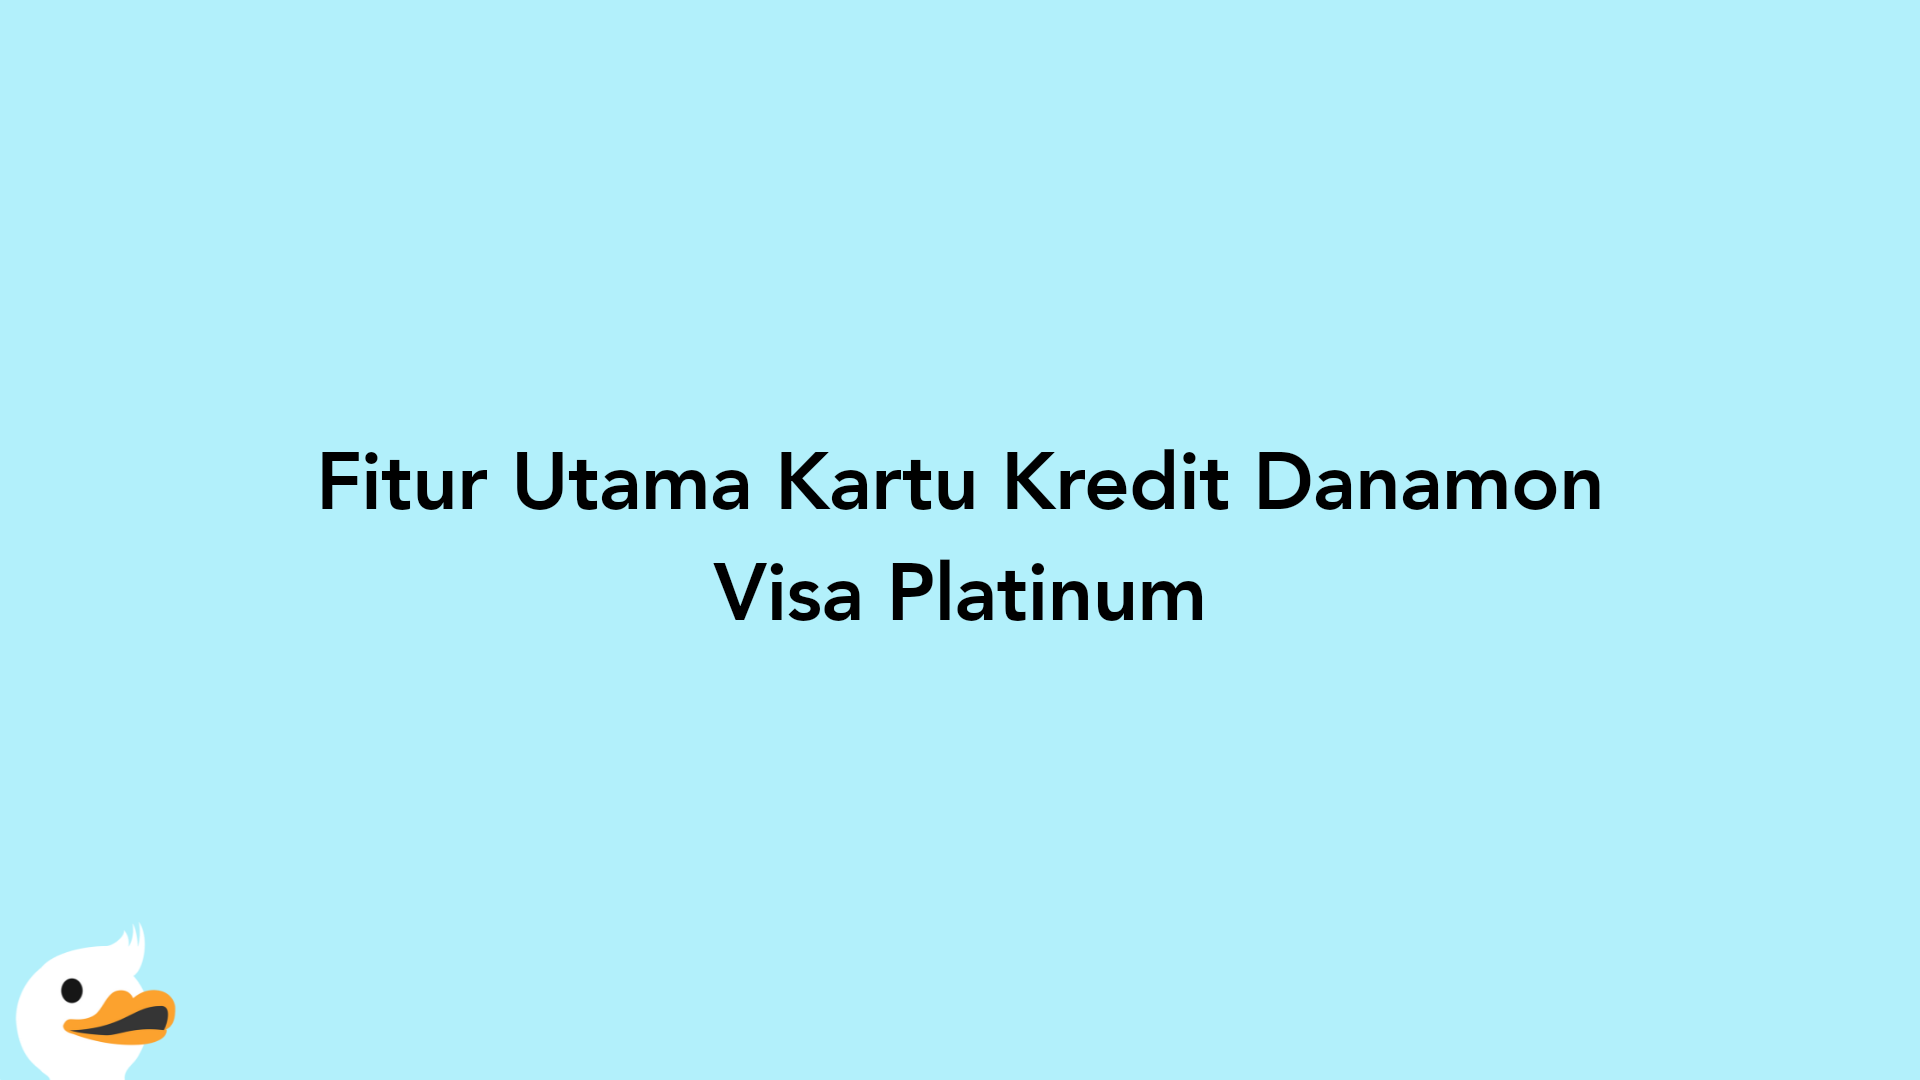 Fitur Utama Kartu Kredit Danamon Visa Platinum